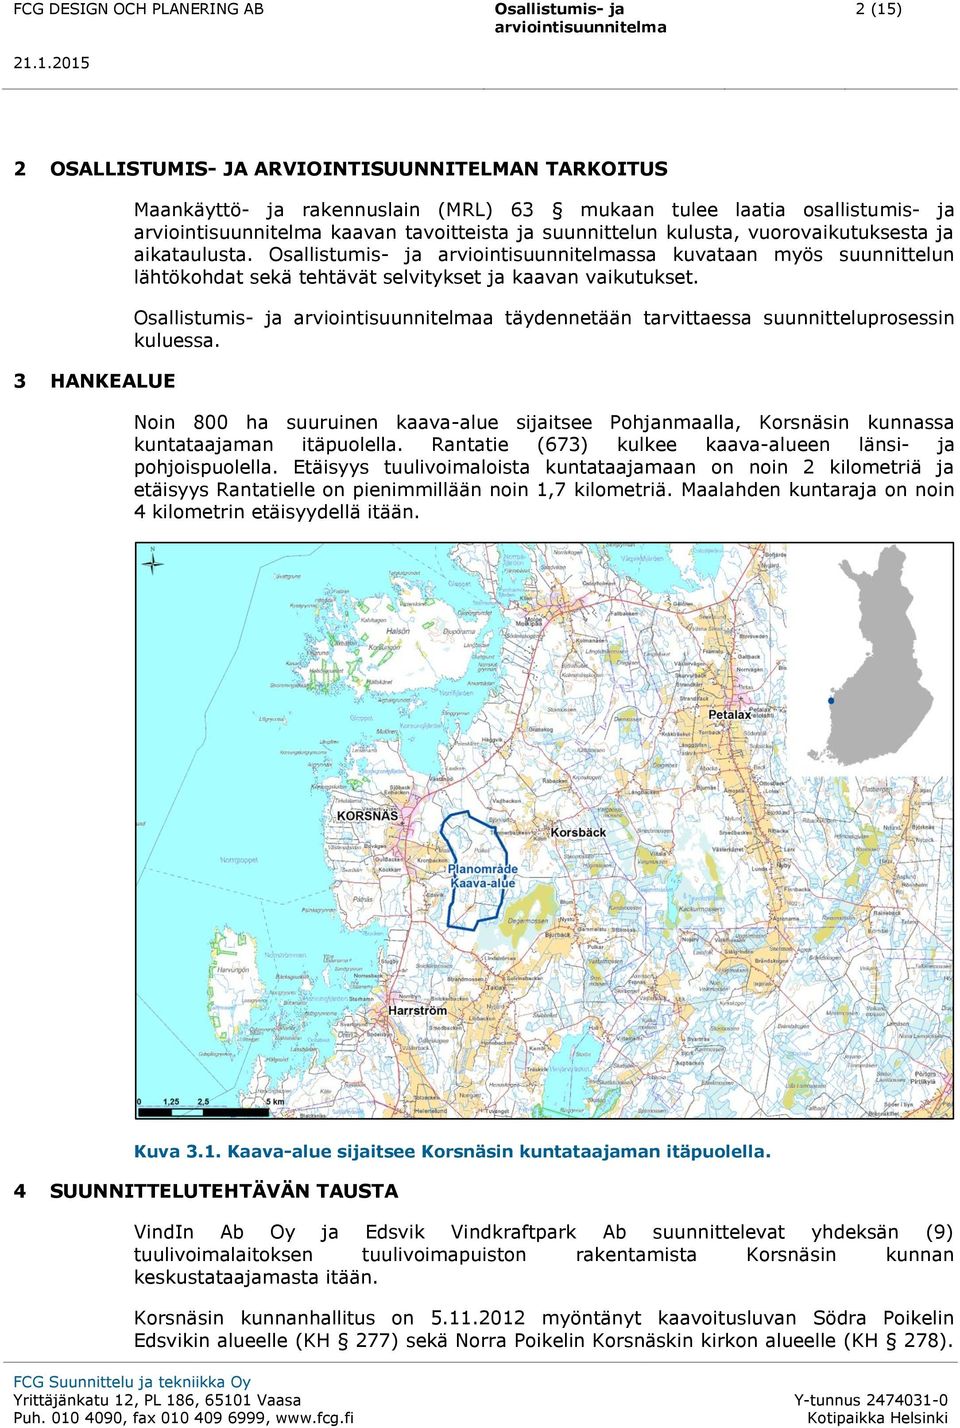 Noin 800 ha suuruinen kaava-alue sijaitsee Pohjanmaalla, Korsnäsin kunnassa kuntataajaman itäpuolella. Rantatie (673) kulkee kaava-alueen länsi- ja pohjoispuolella.